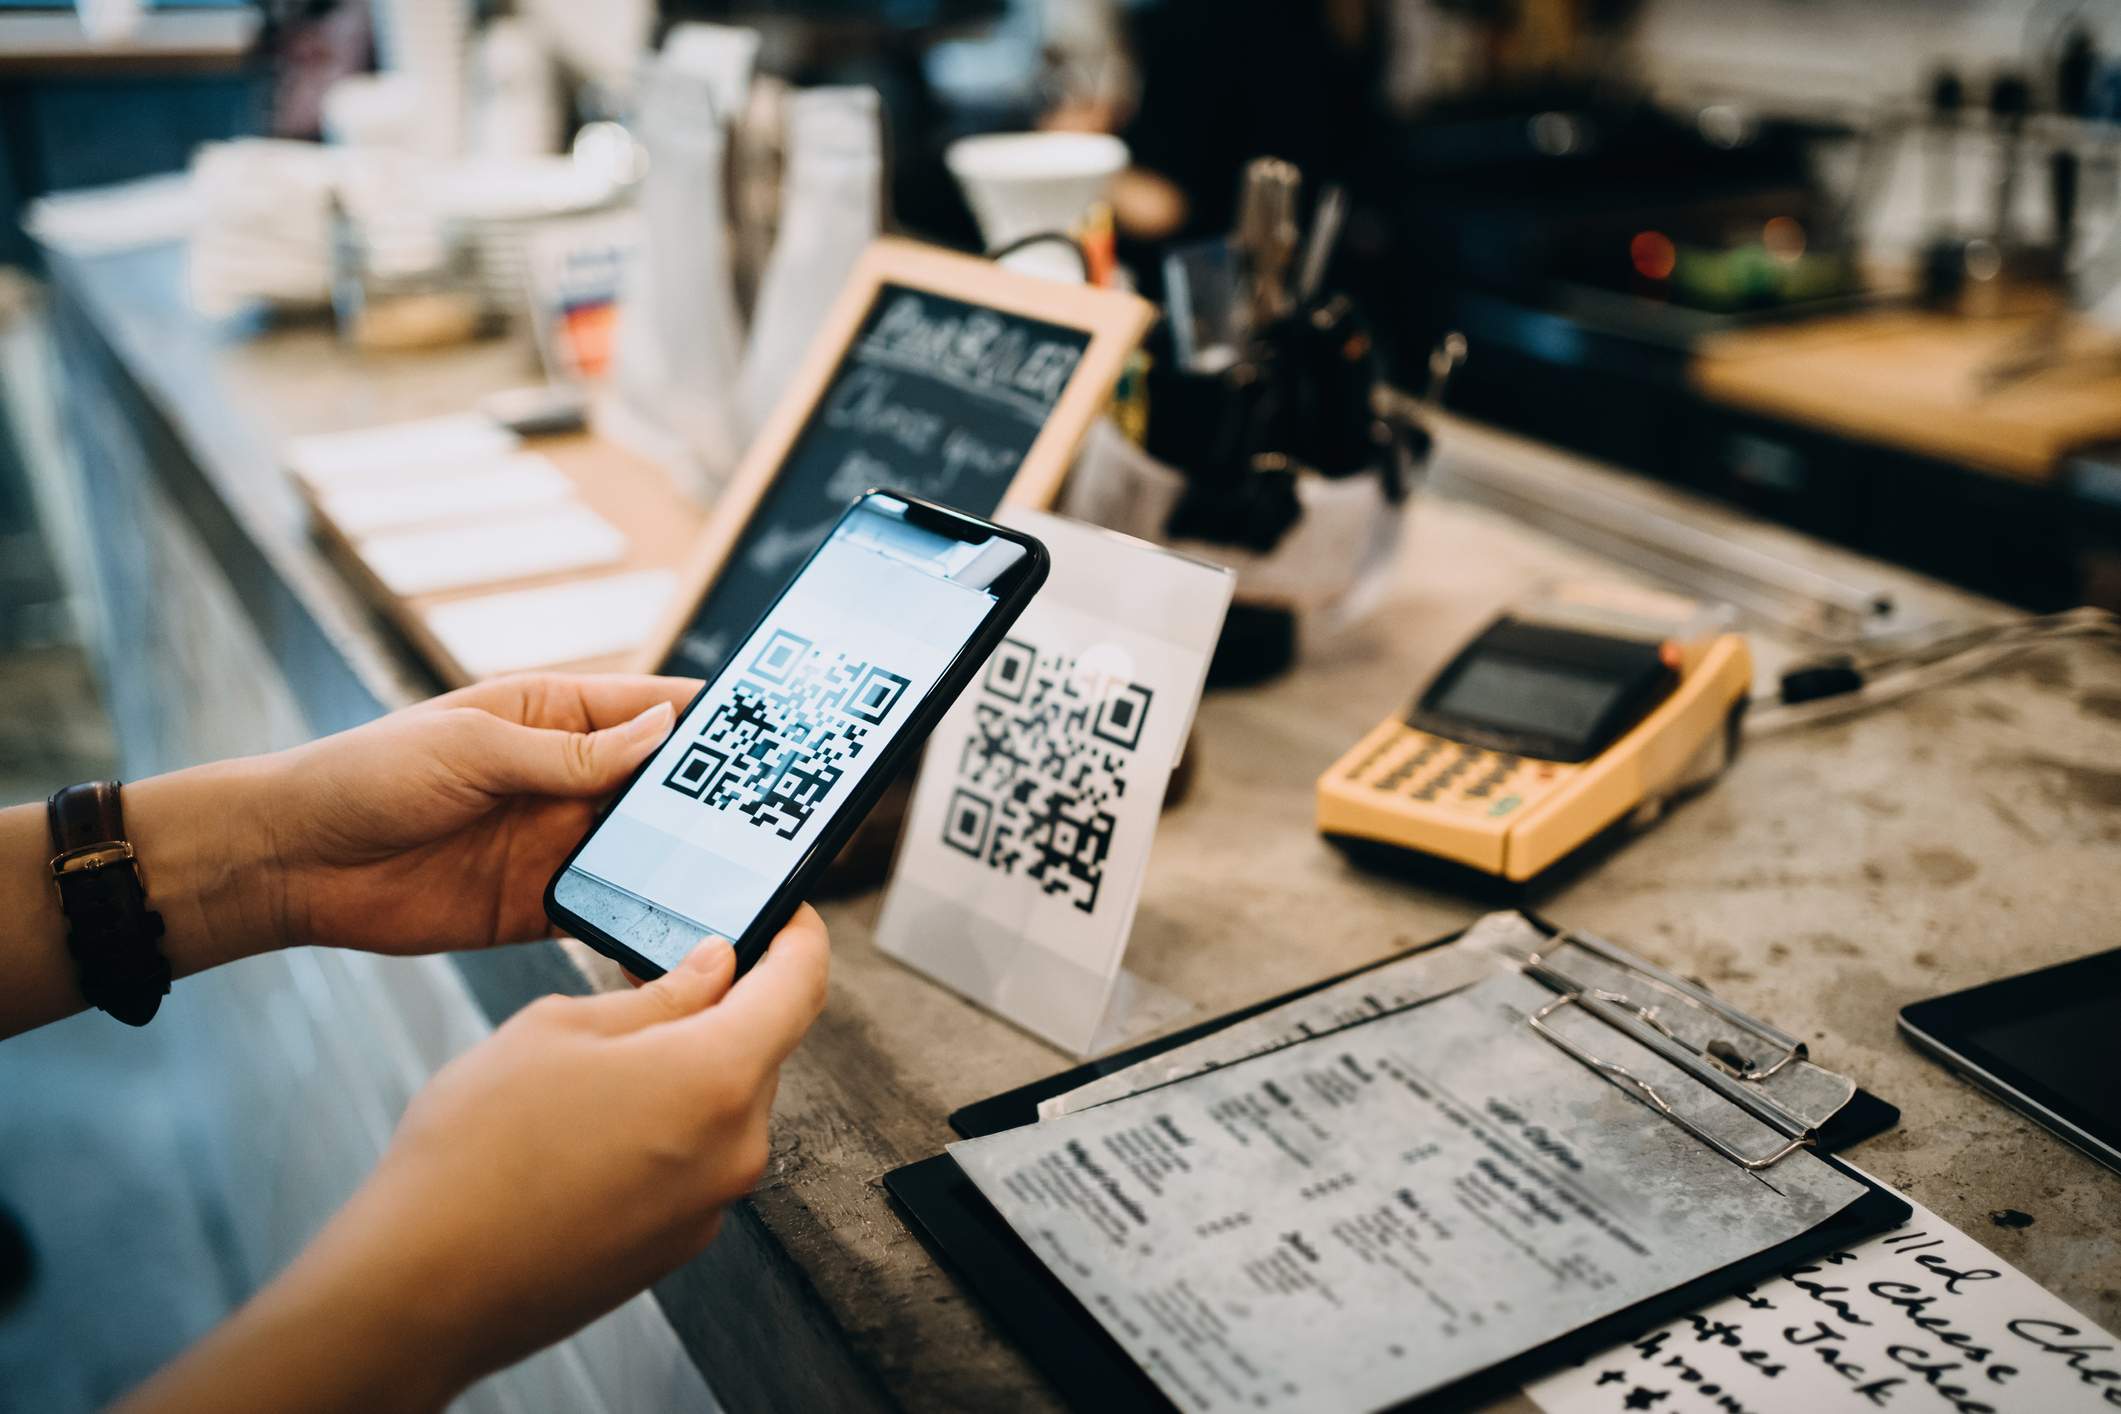 L'image représente une personne tenant un téléphone devant le comptoir d'un restaurant et scannant un code QR.